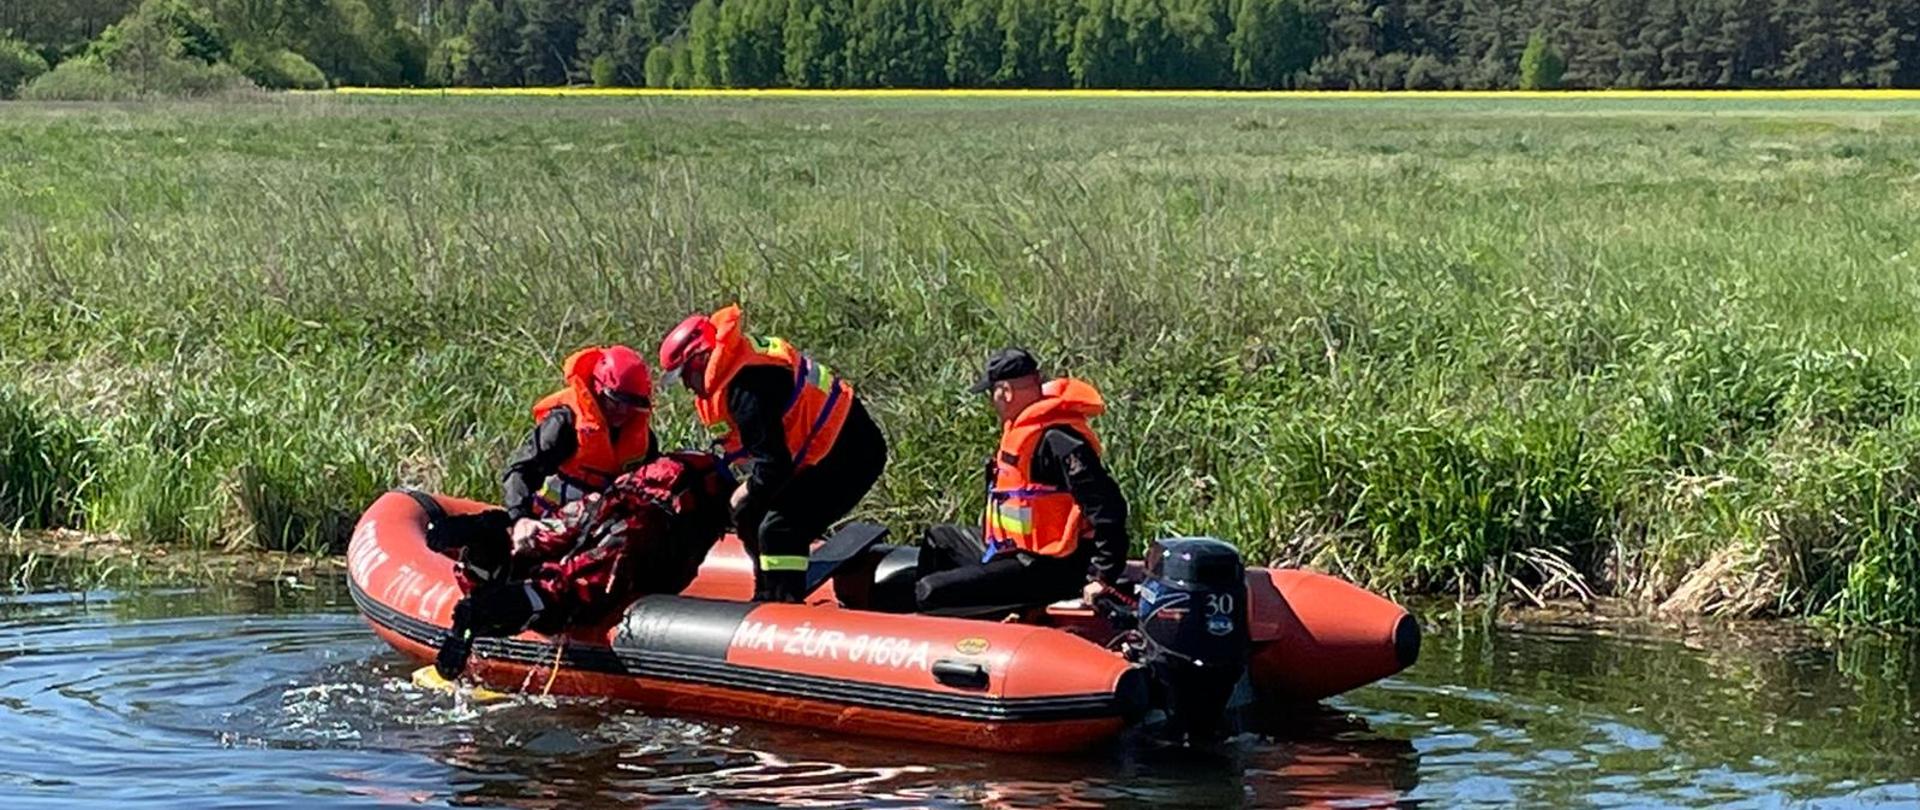 Ćwiczenia w ramach doskonalenia zawodowego na rzece. Trzech strażaków wykonuje ćwiczenia na pontonie.